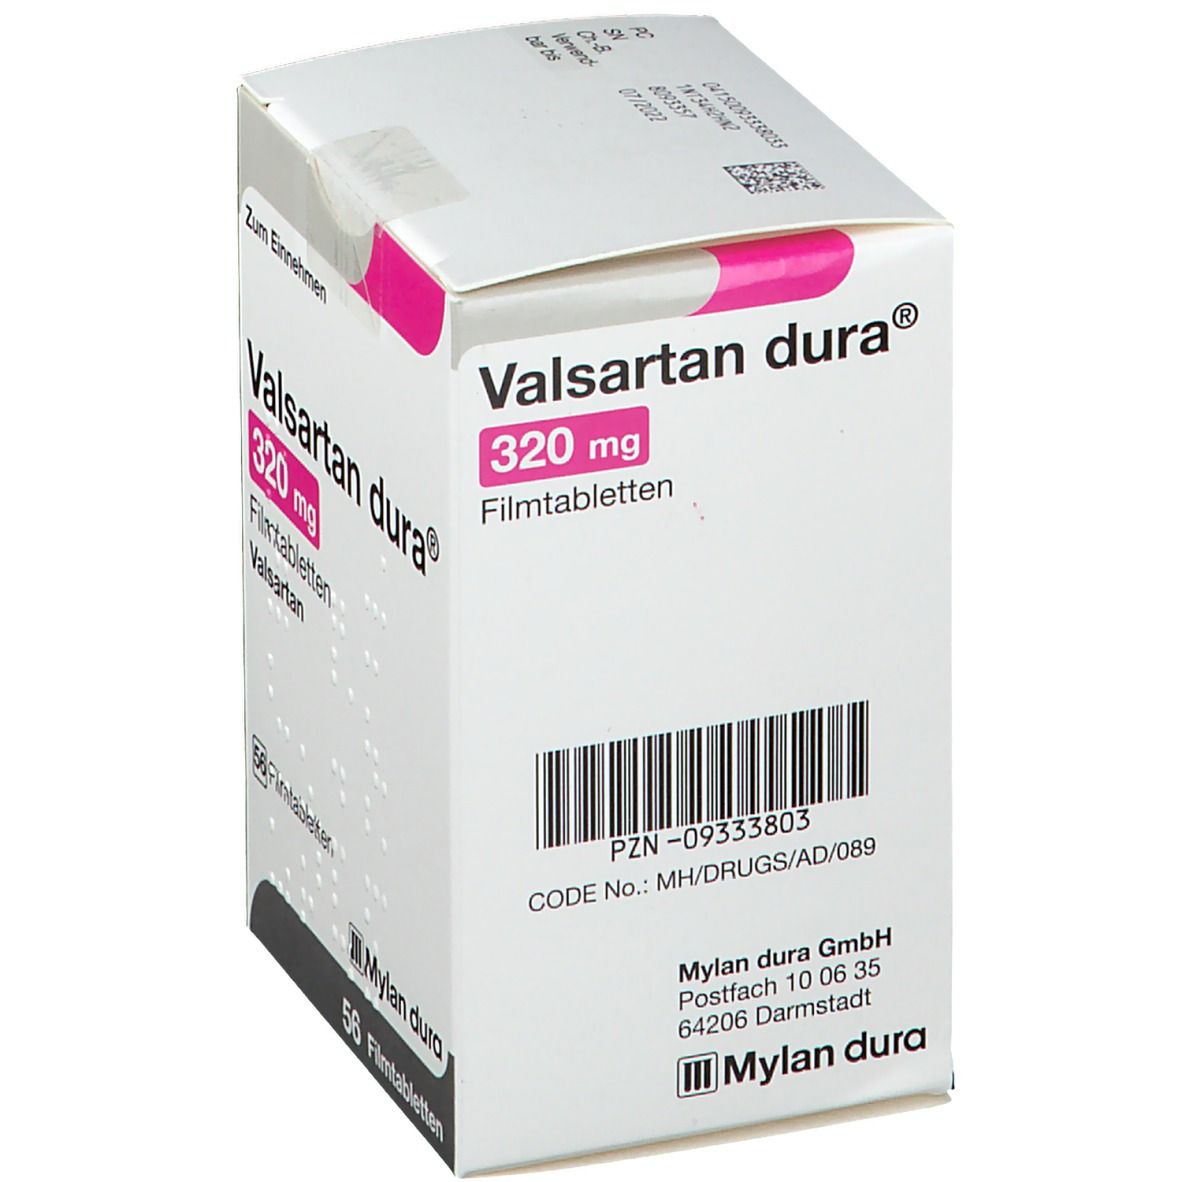 Valsartan dura® 320 mg